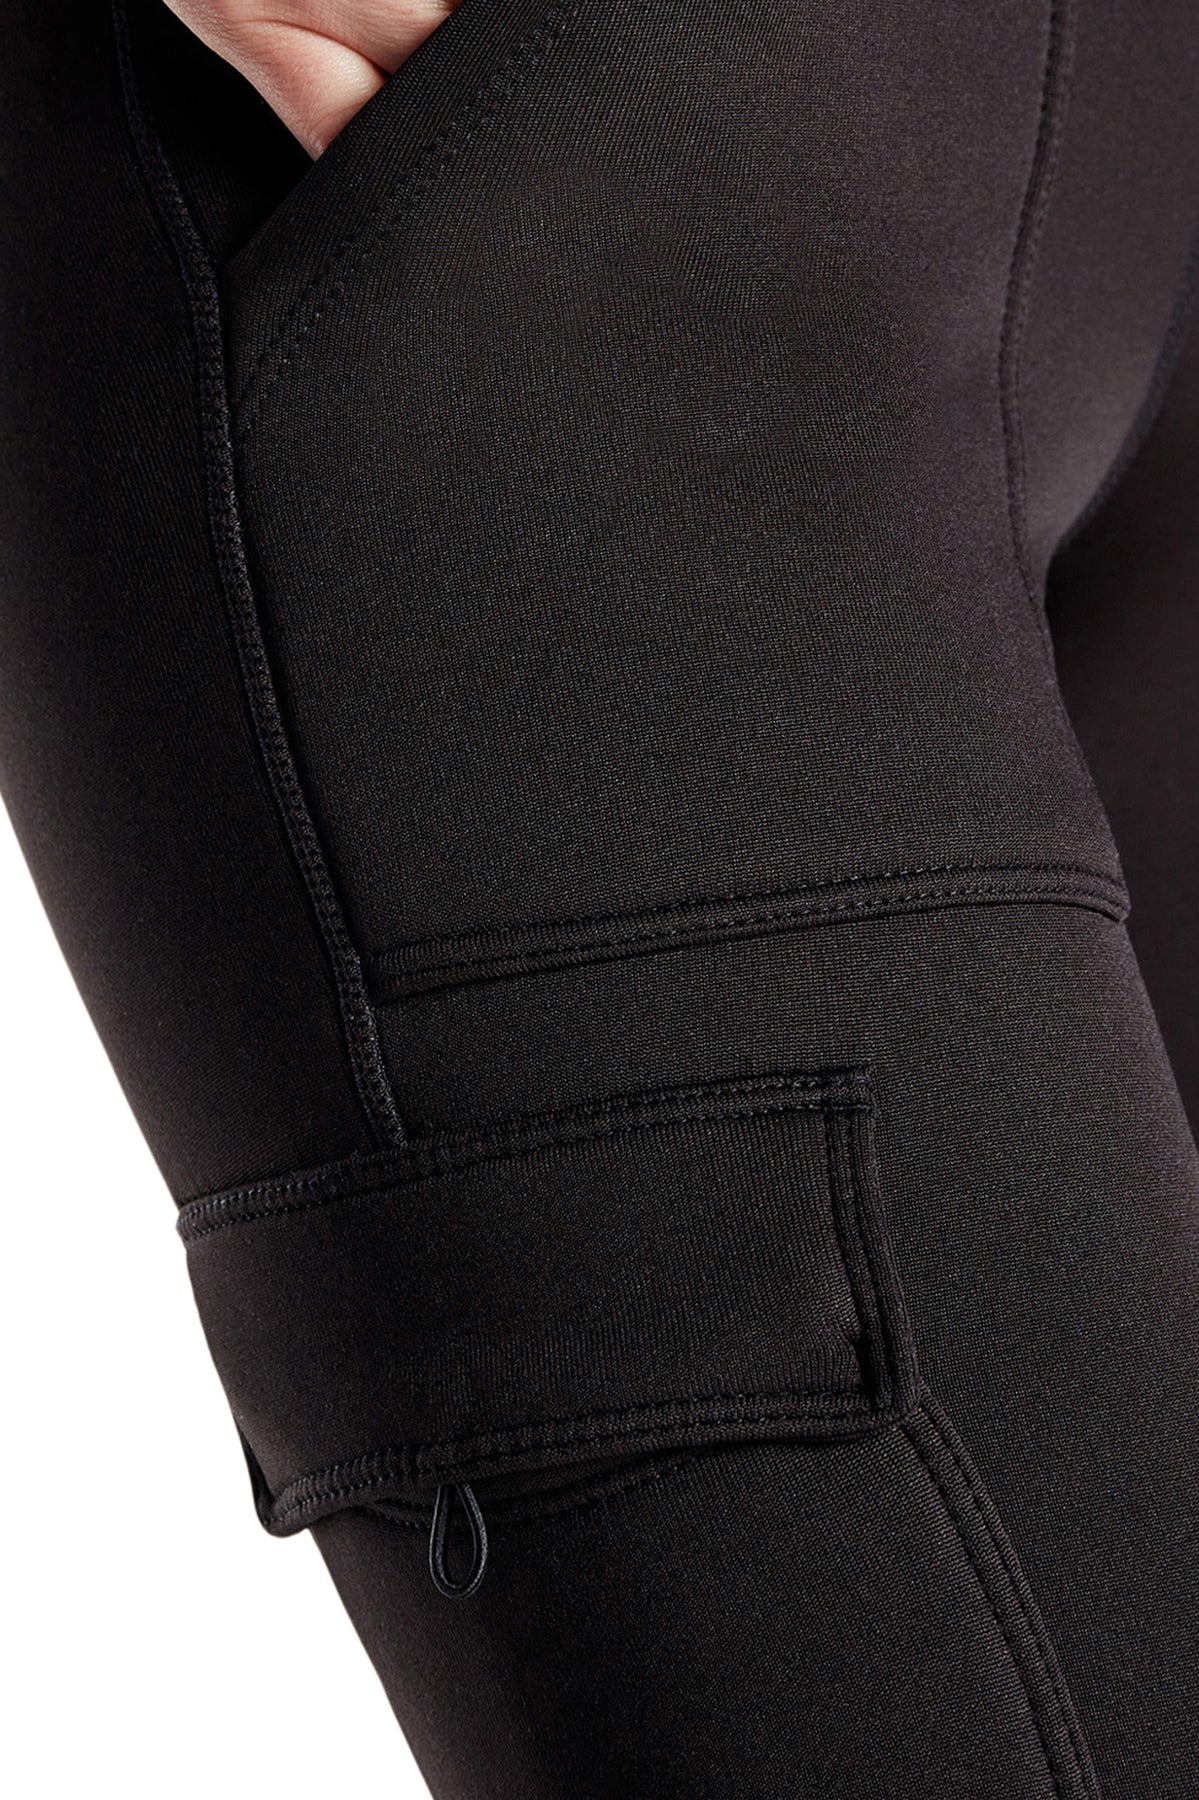 Kyodan, Pants & Jumpsuits, Kyodan Thermal Thick Leggings Fleece Grey  Chevron Pattern Pants Warmer Xs Lounge